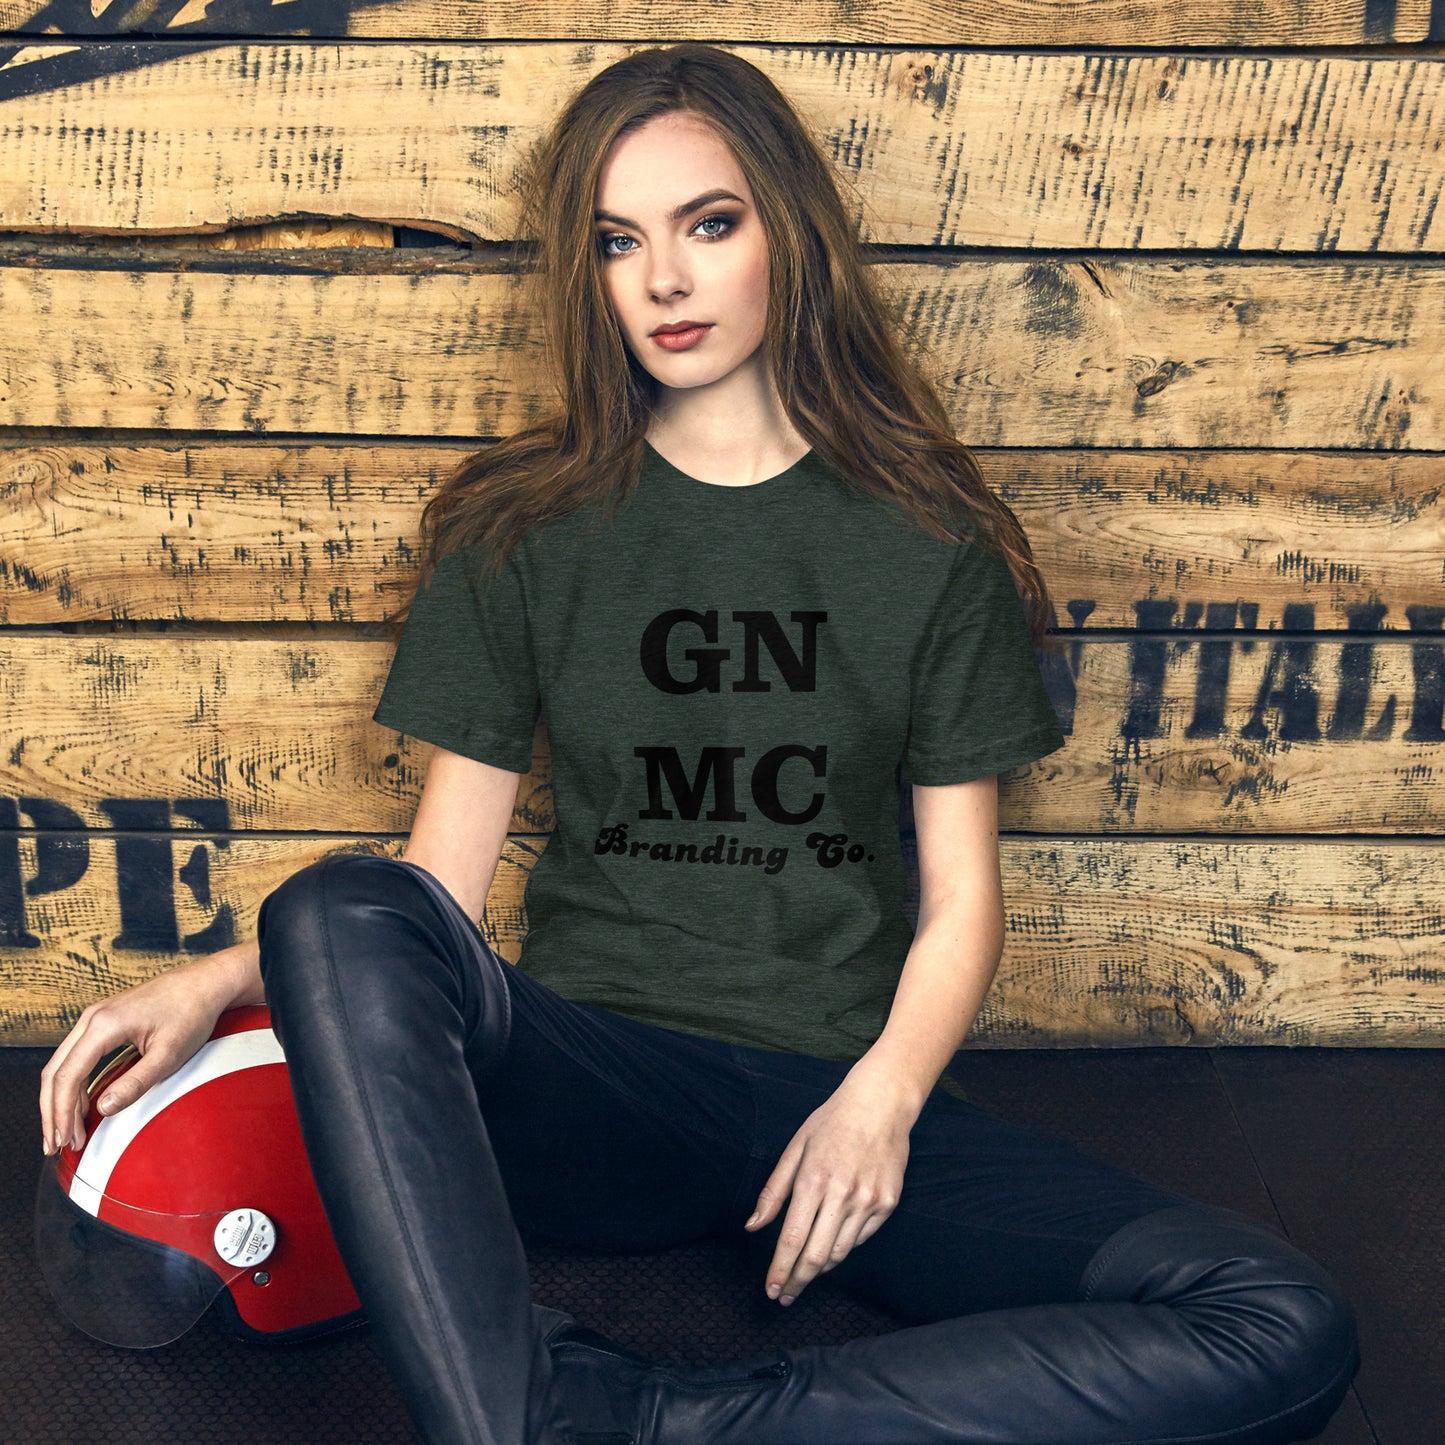 GNMC Branding Co. Unisex t-shirt